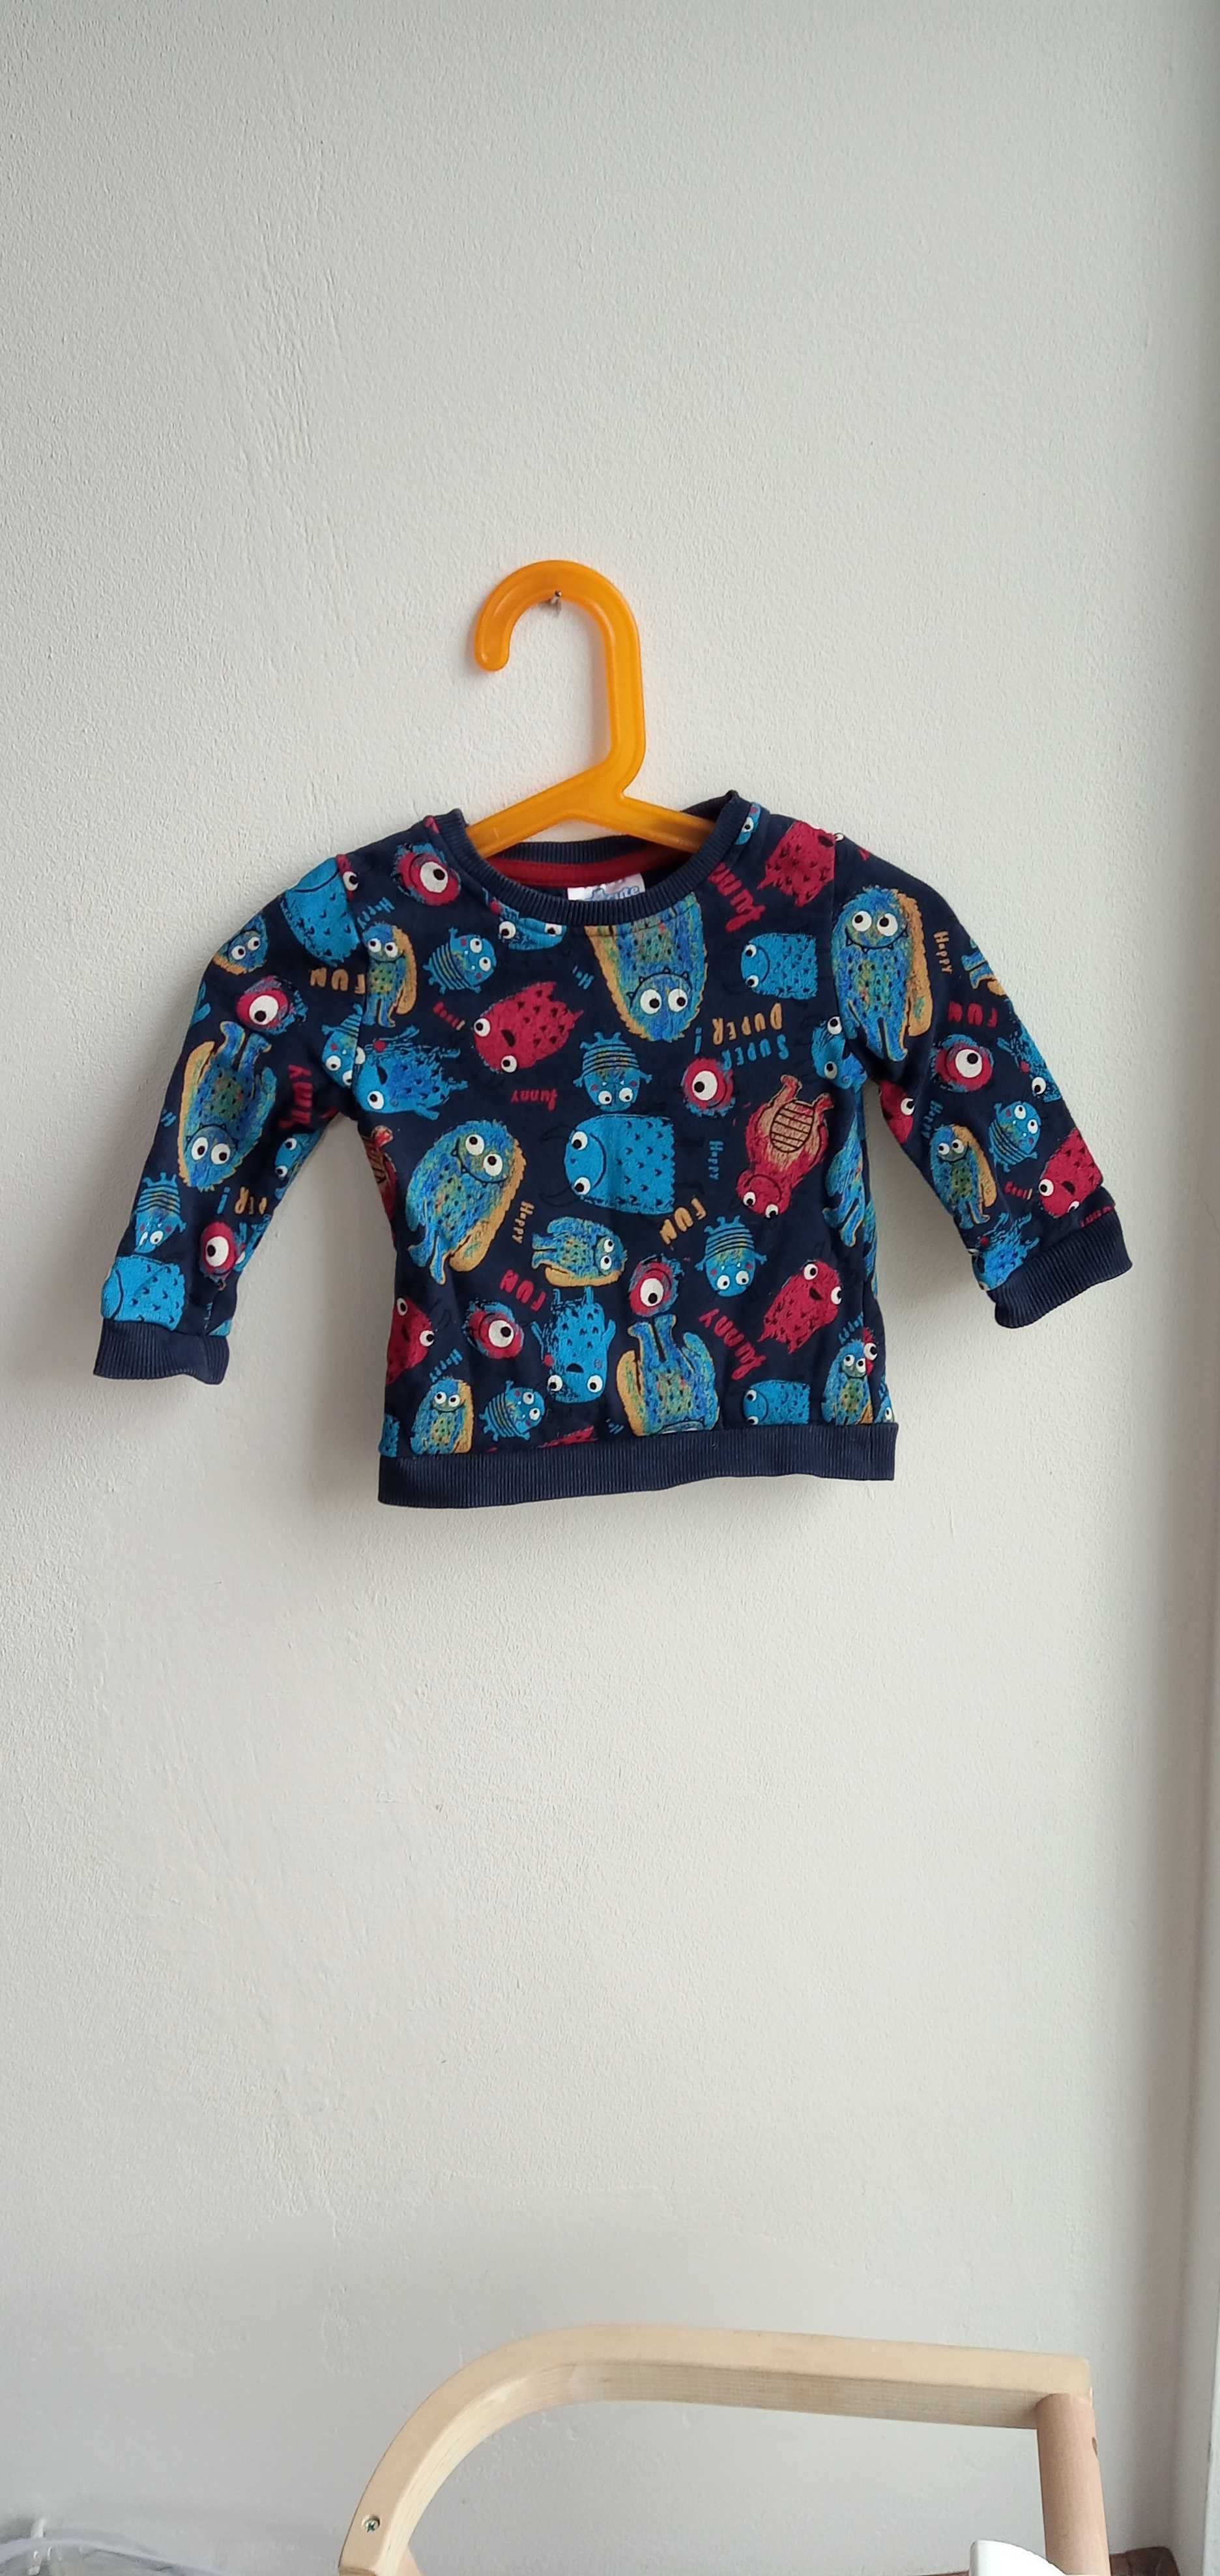 Bluza dla niemowlaka rozmiar 9-12 miesięcy